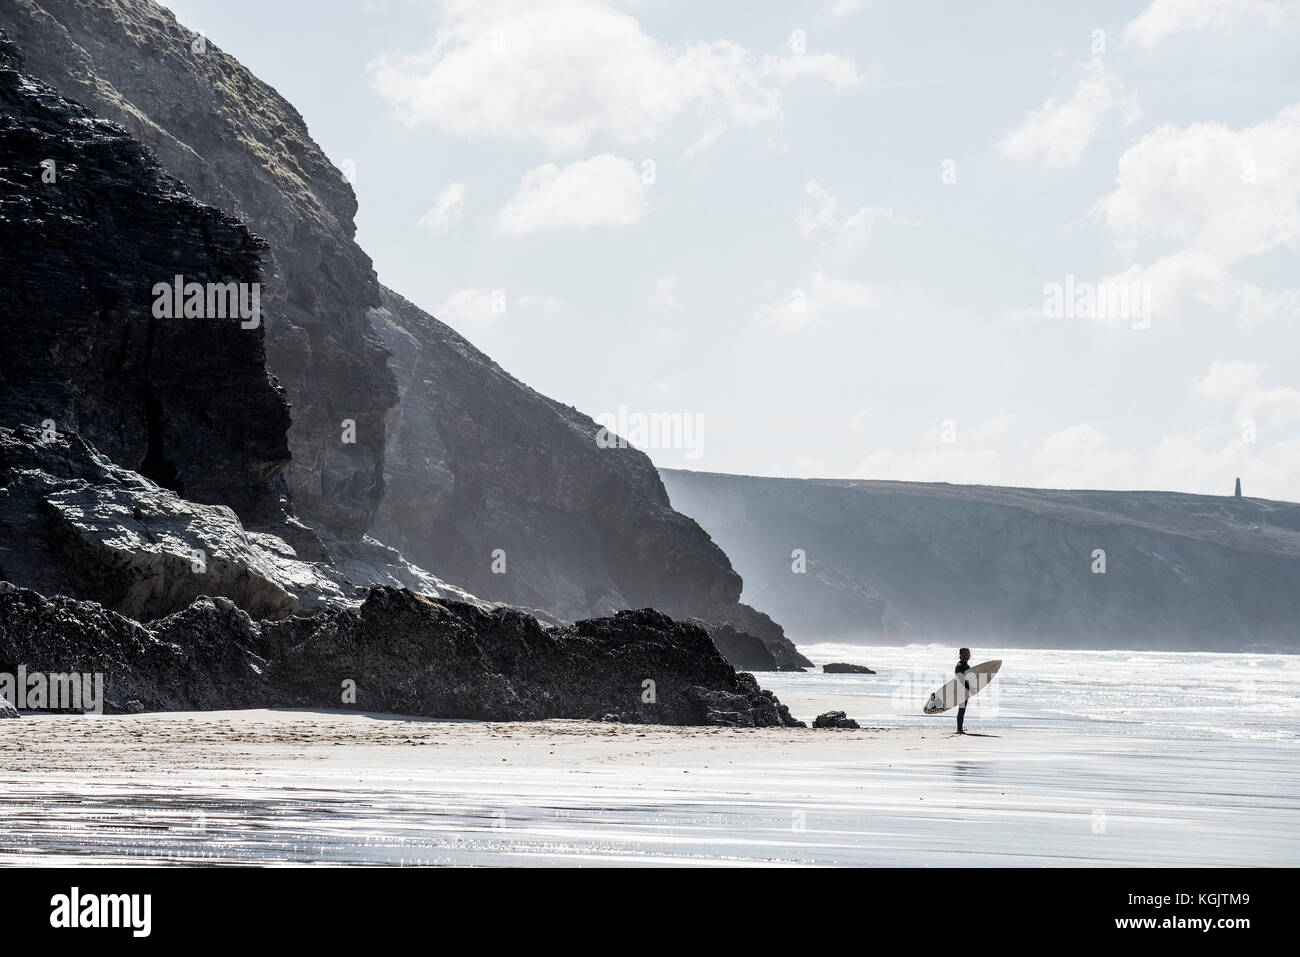 Der einsame Surfer am Strand mit Blick auf das Meer. Stockfoto